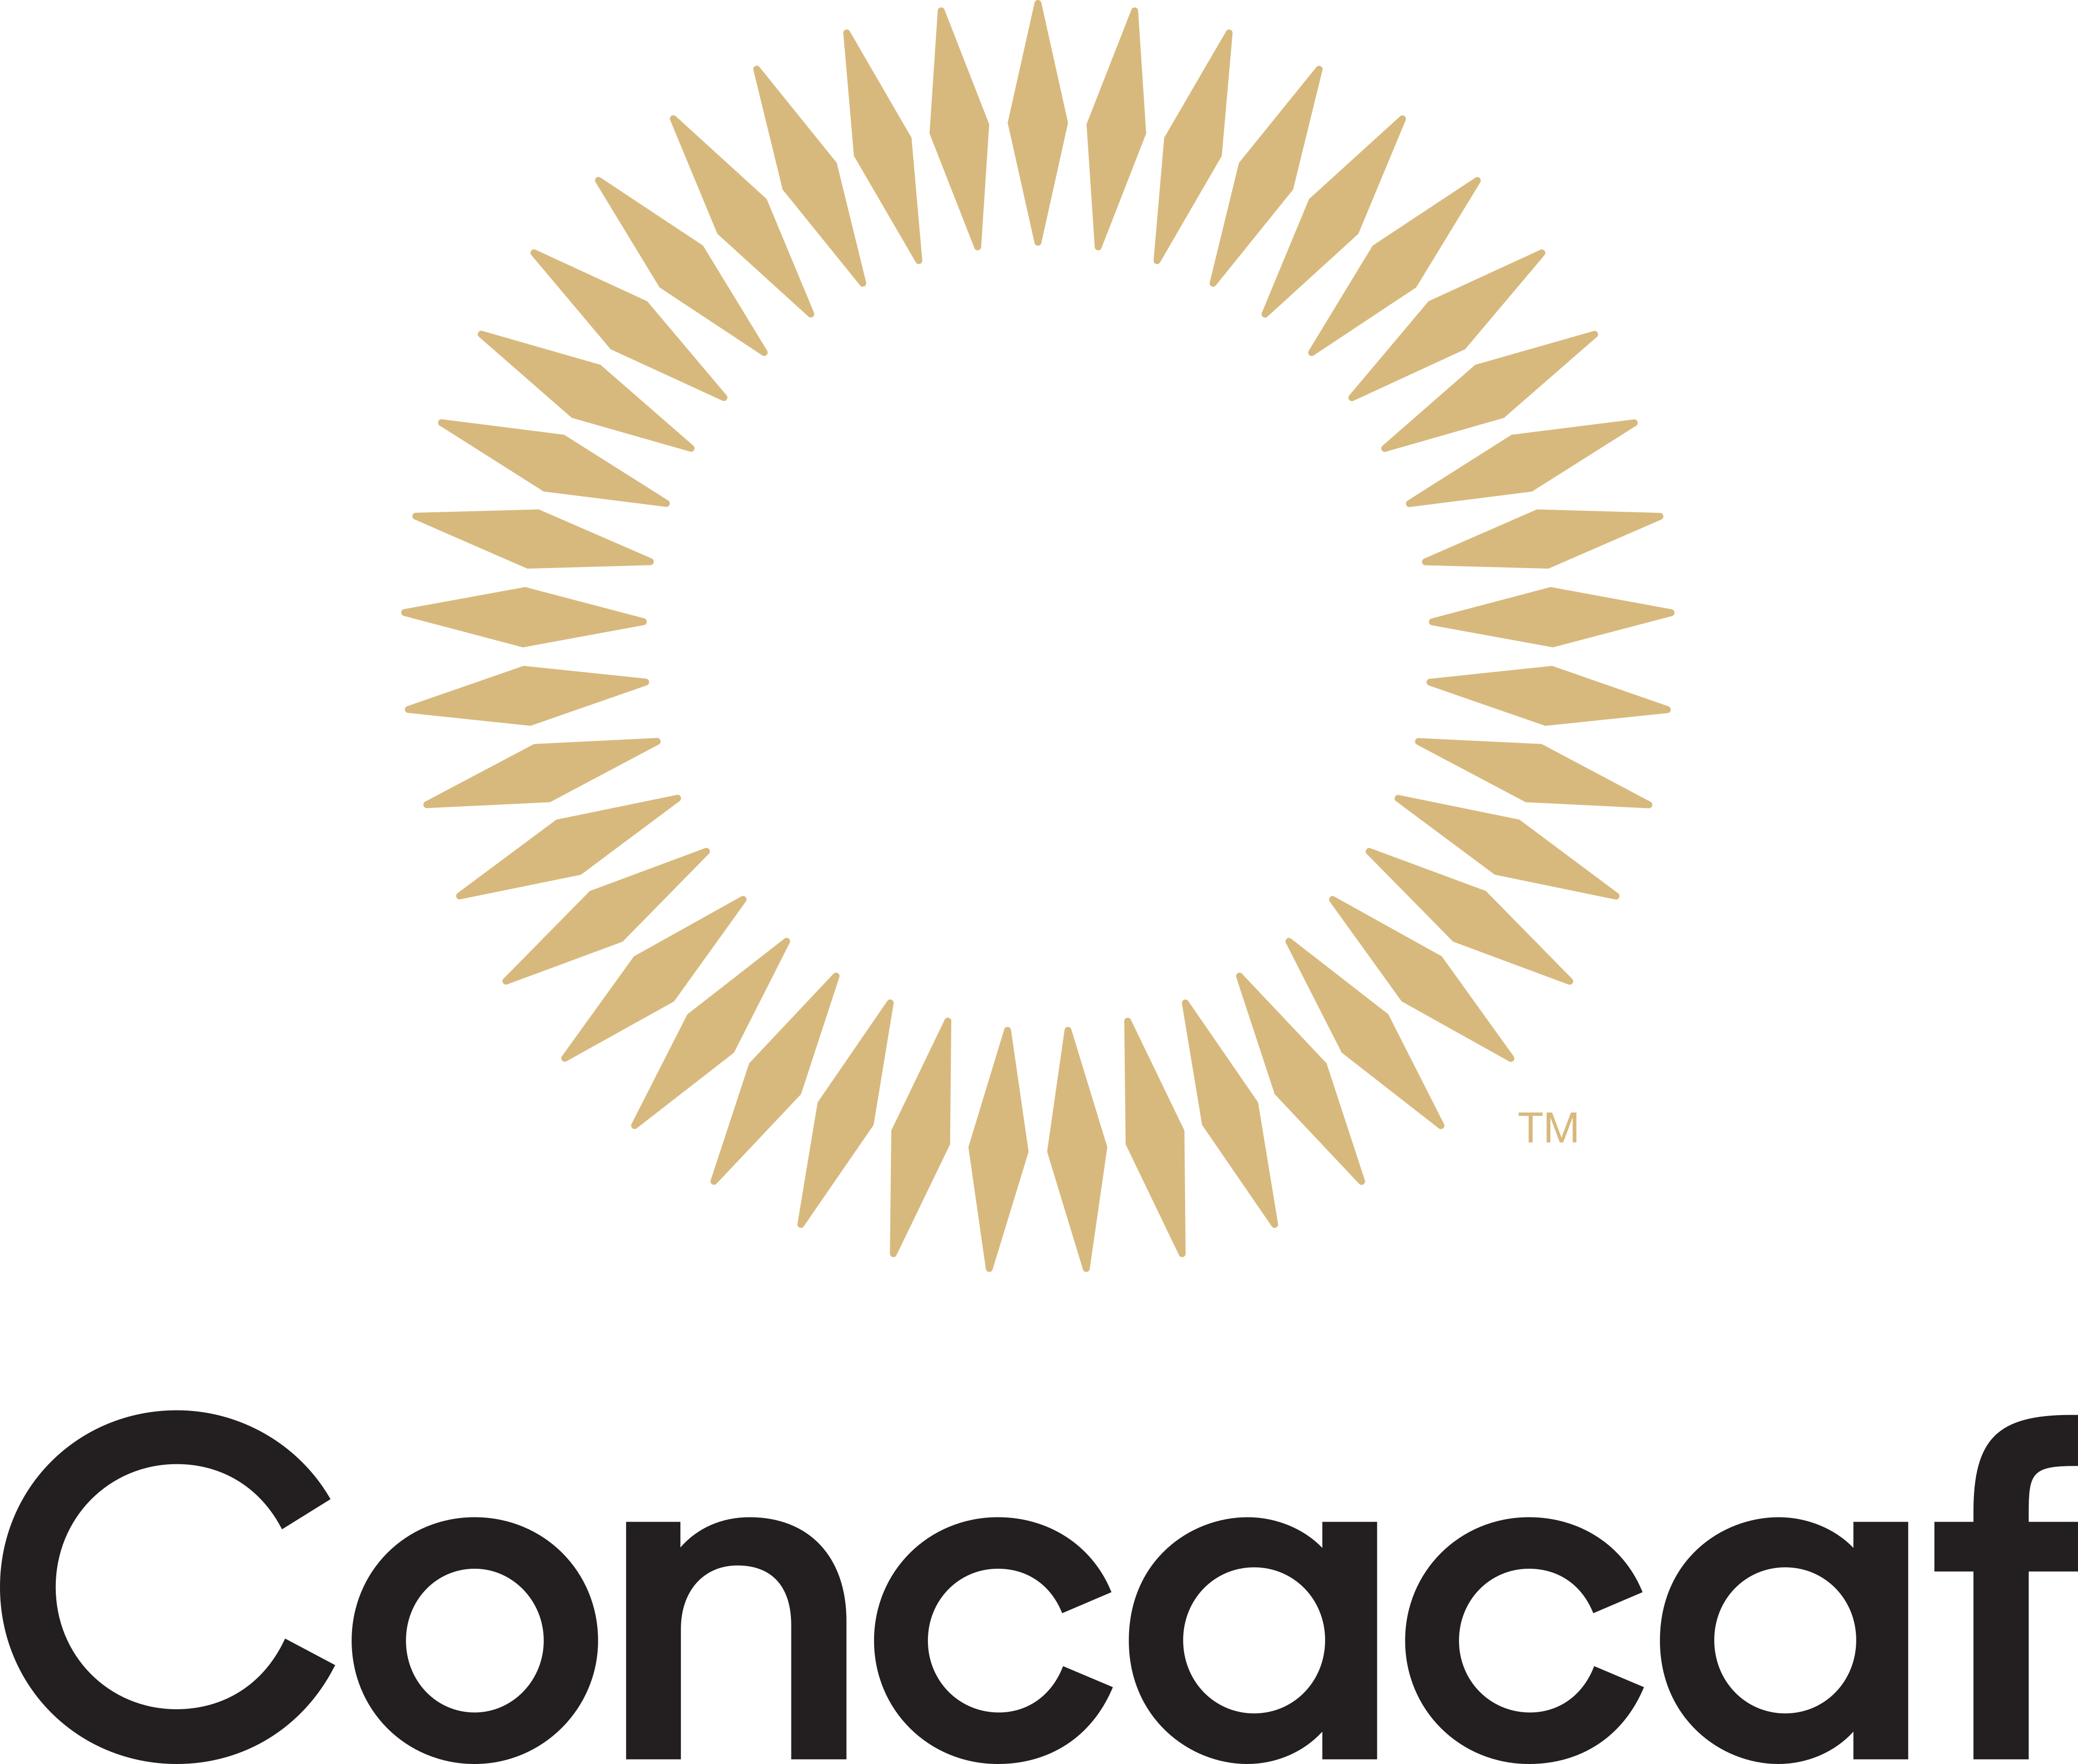 concacaf logo 1 - CONCACAF Logo